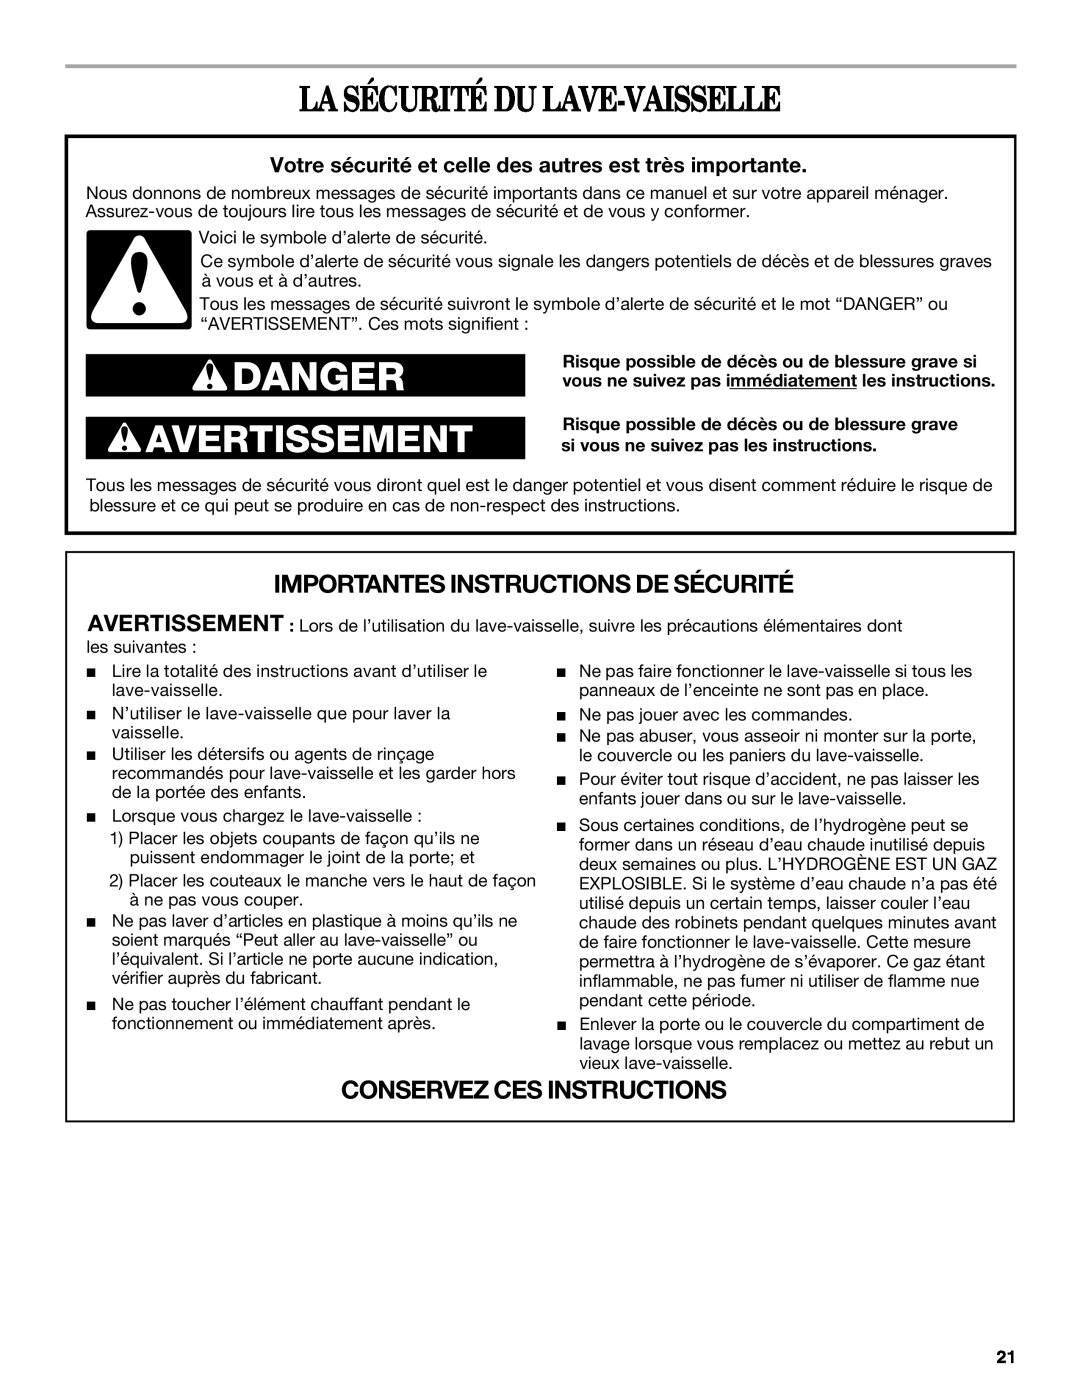 Whirlpool 810 La Sécurité Du Lave-Vaisselle, Importantes Instructions De Sécurité, Conservez Ces Instructions, Danger 